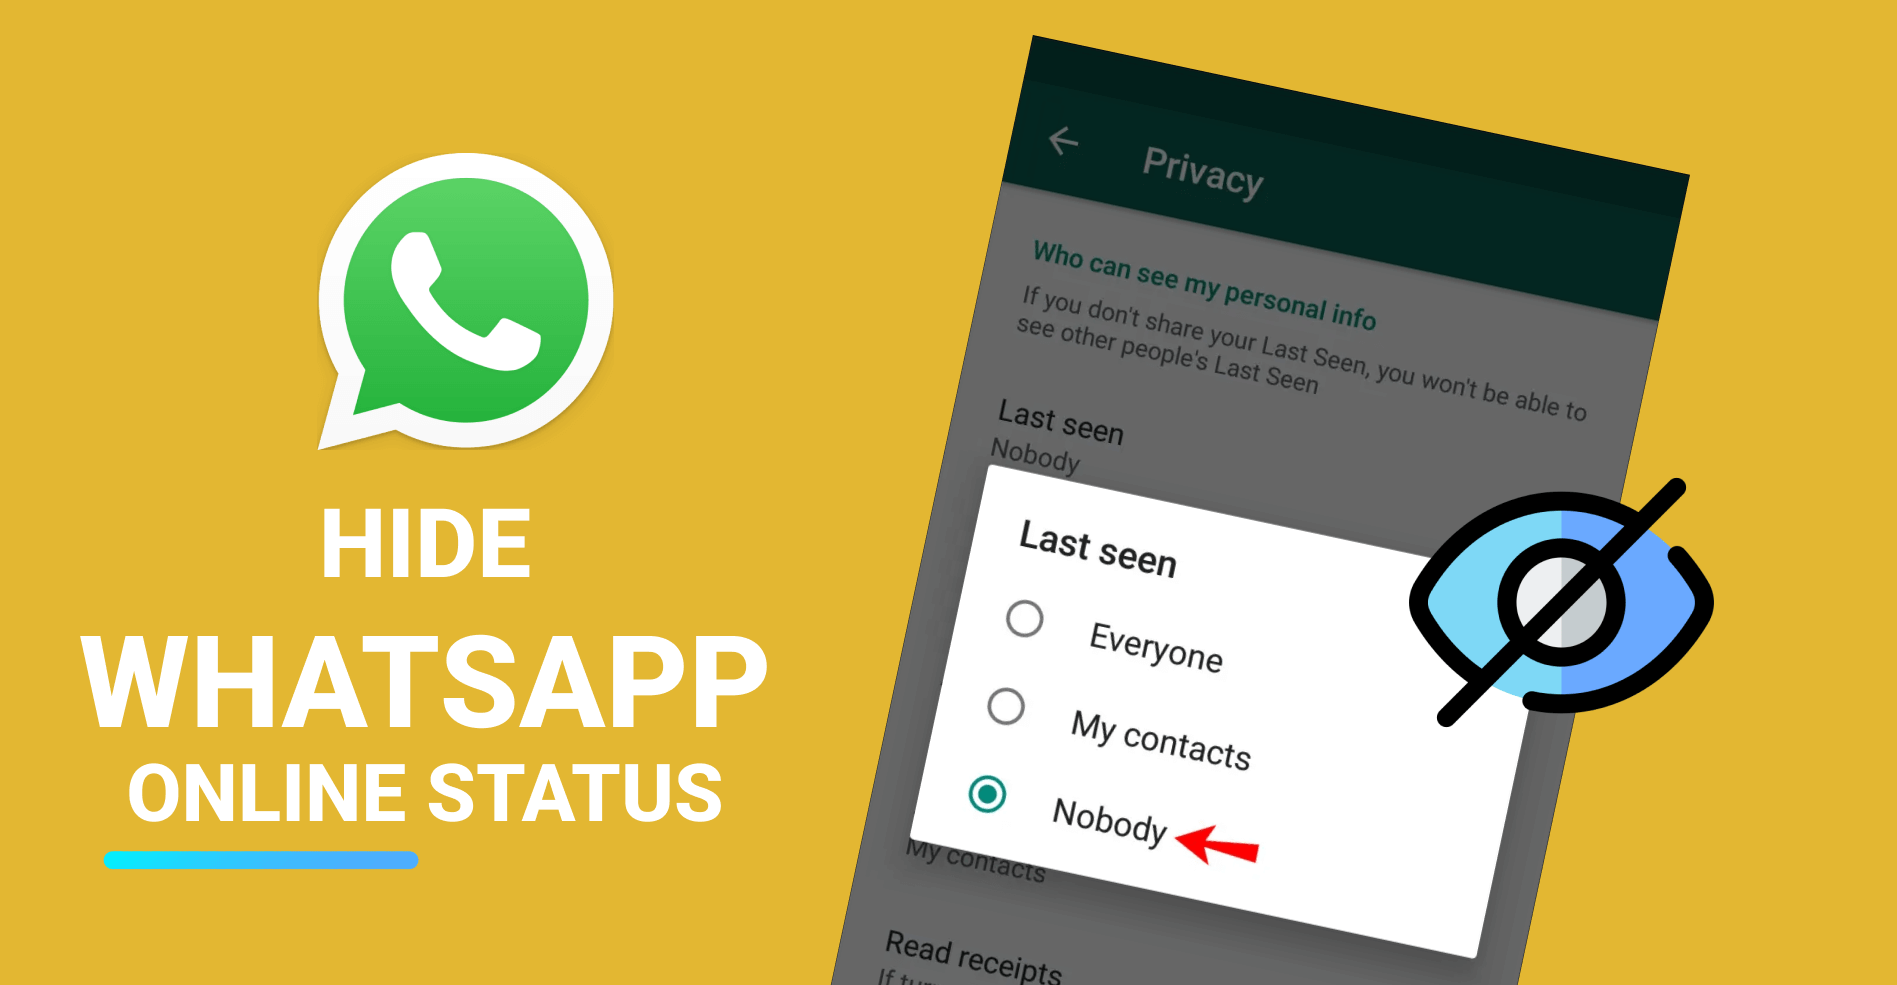  hide whatsapp onlien status